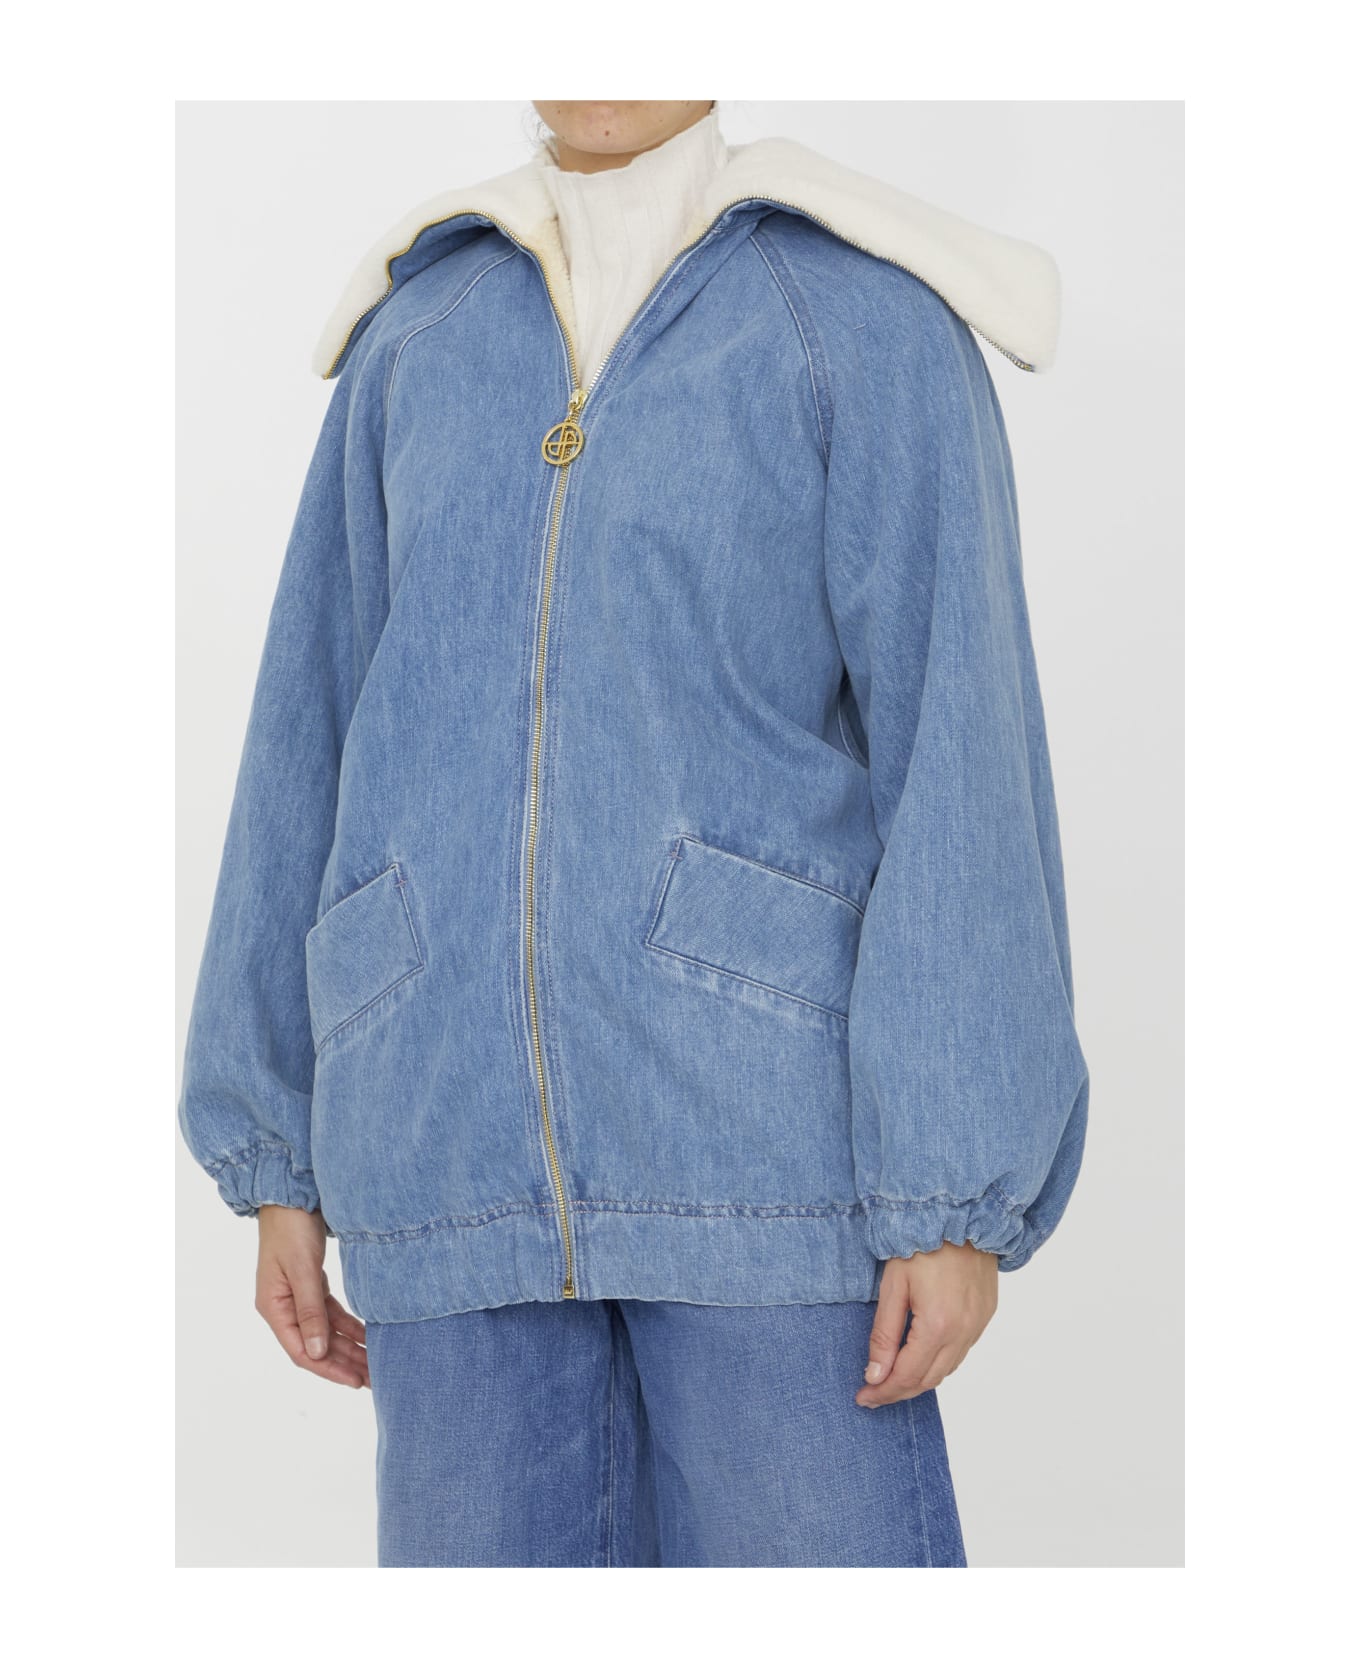 Patou Oversized Denim Jacket - BLUE